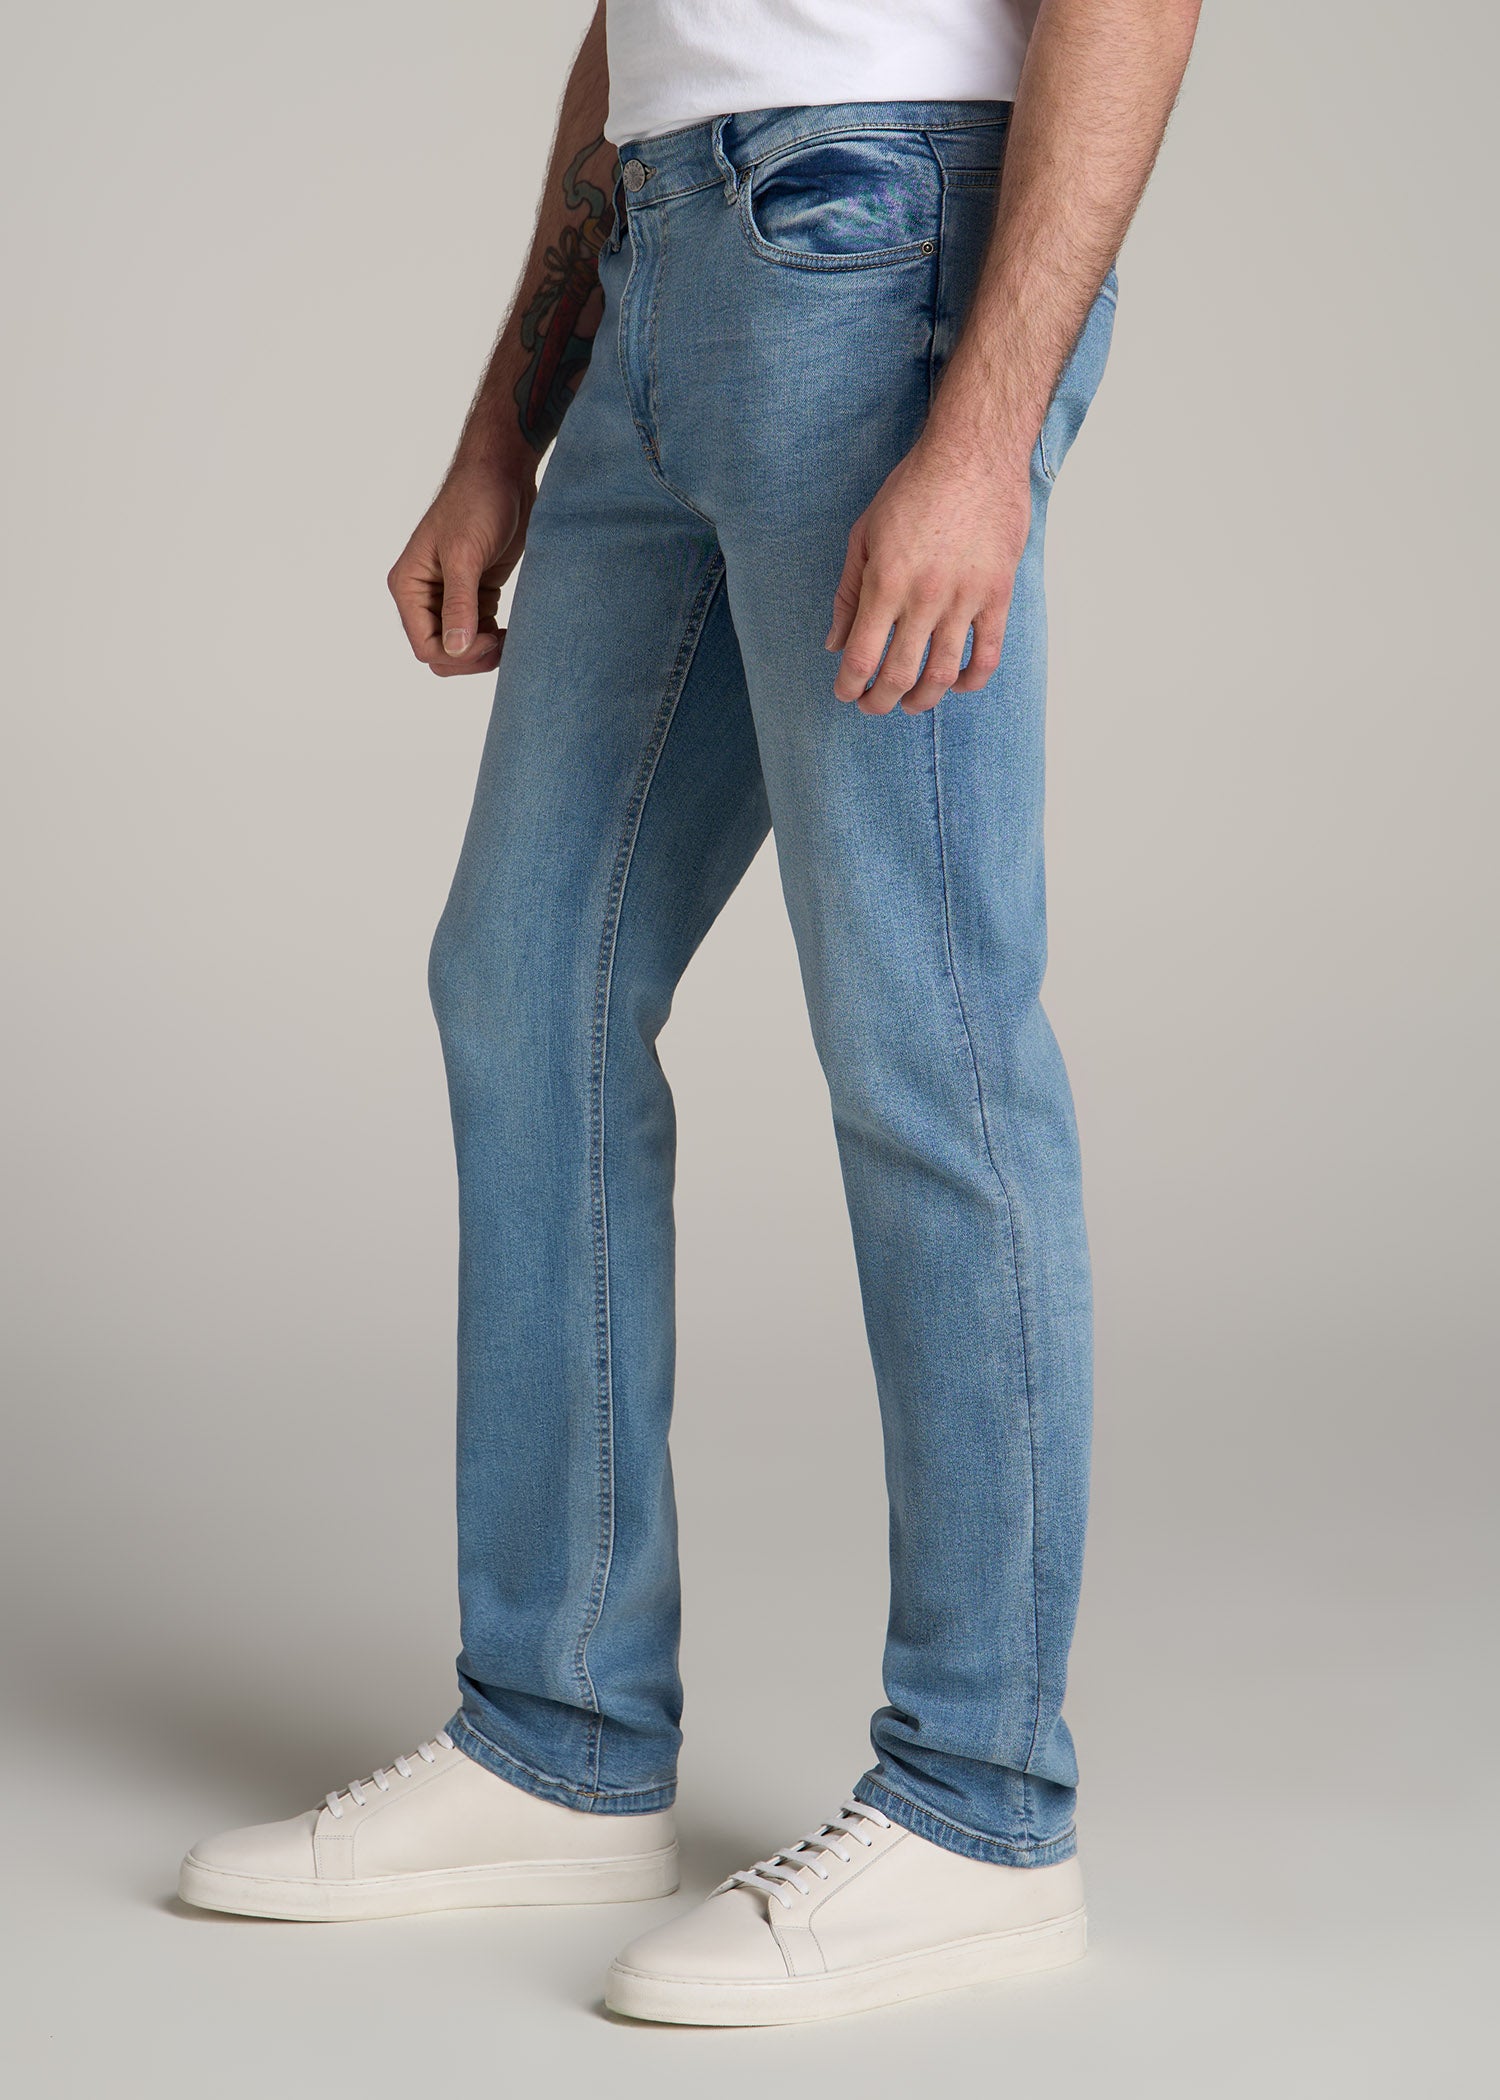 Jeans J1 American Tall Fade Men\'s | New Tall